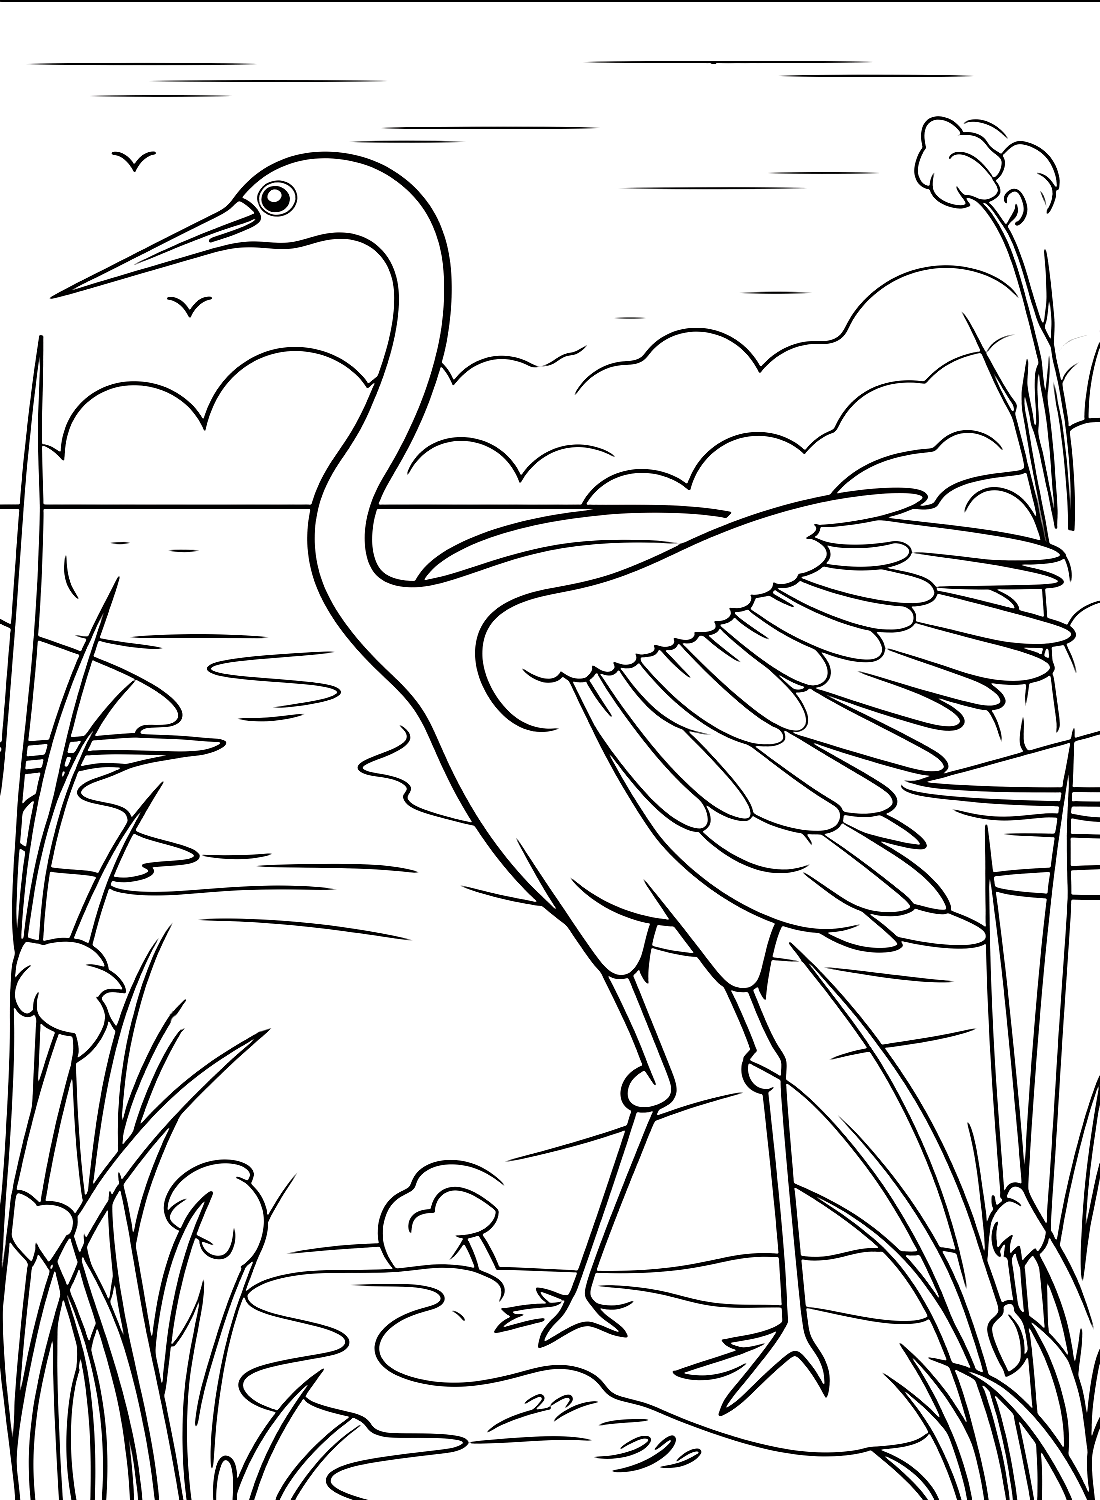 Crane Bird va a cazar desde Crane Bird